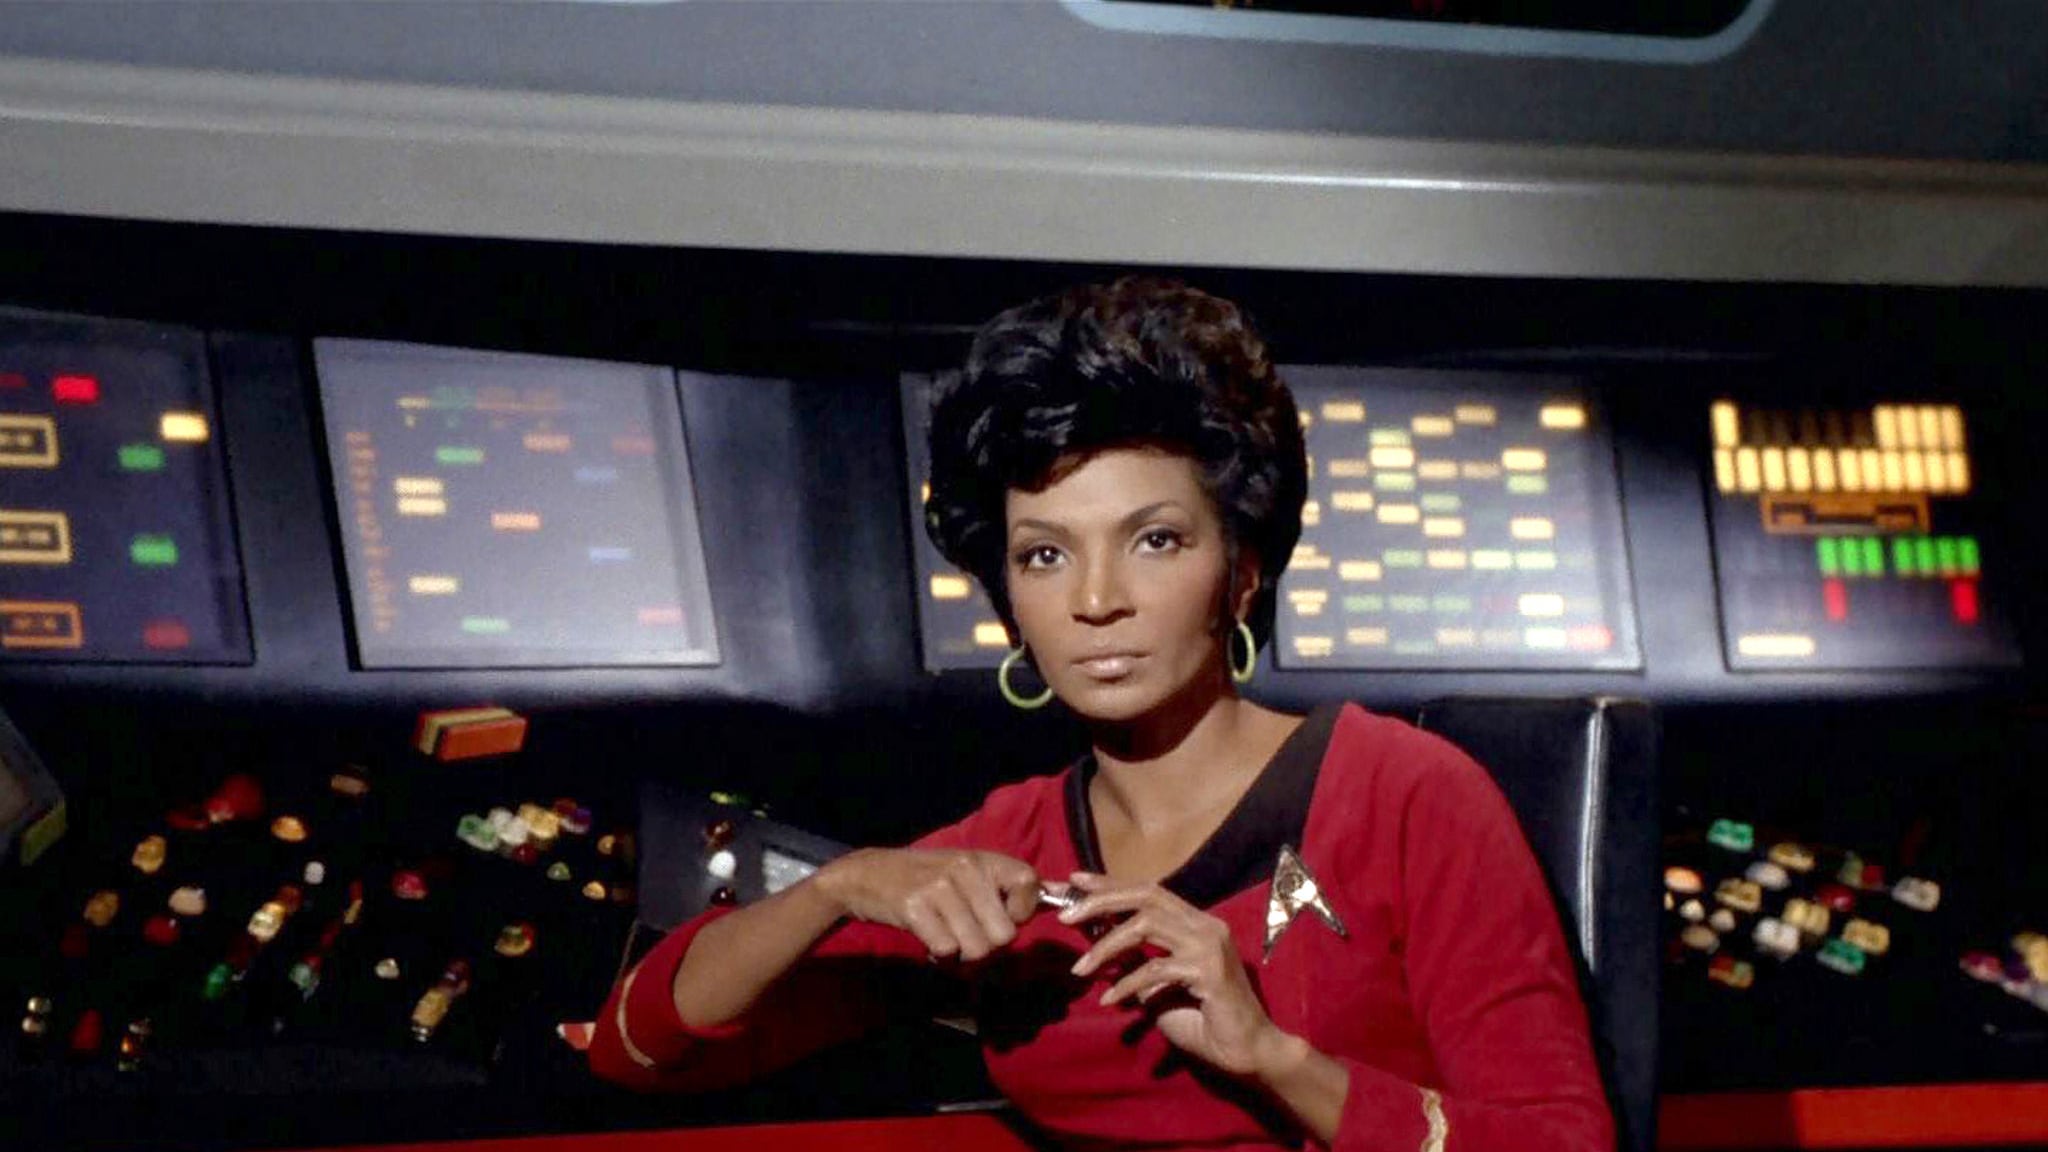 La actriz interpretó a la teniente Uhura en Star Trek.